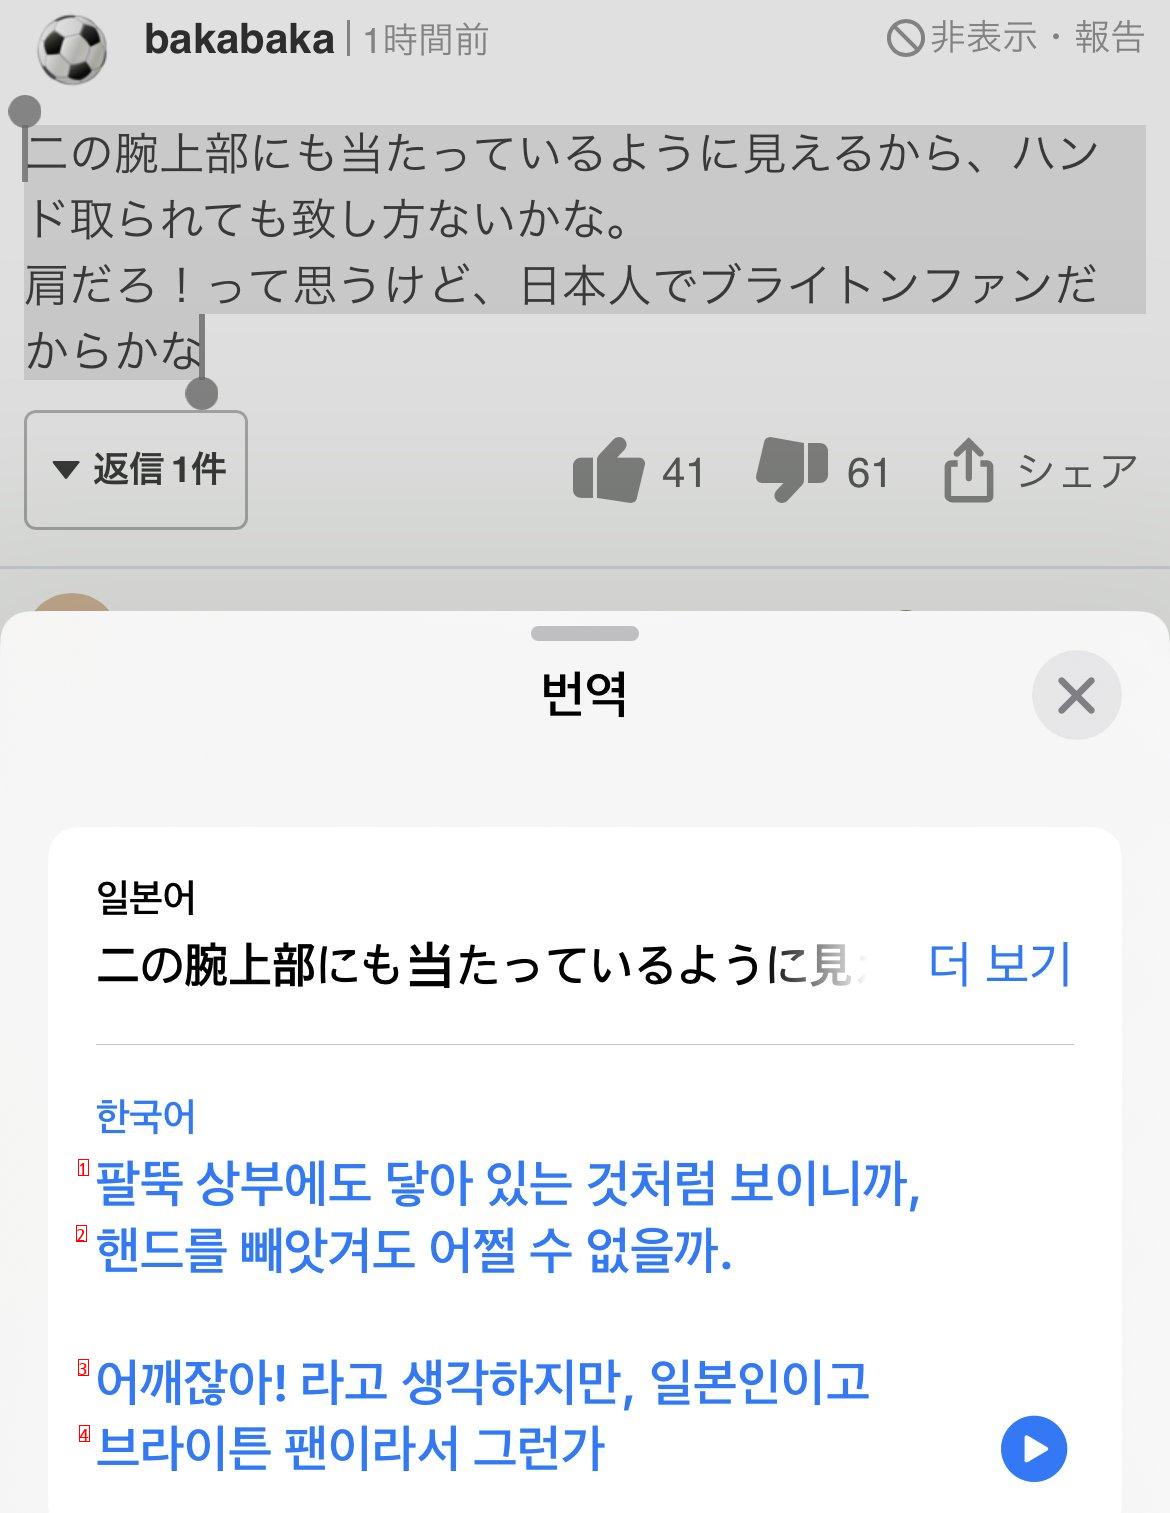 일뽕 멸망!!!! 이 축알못 새끼들아 ft.일본 반응